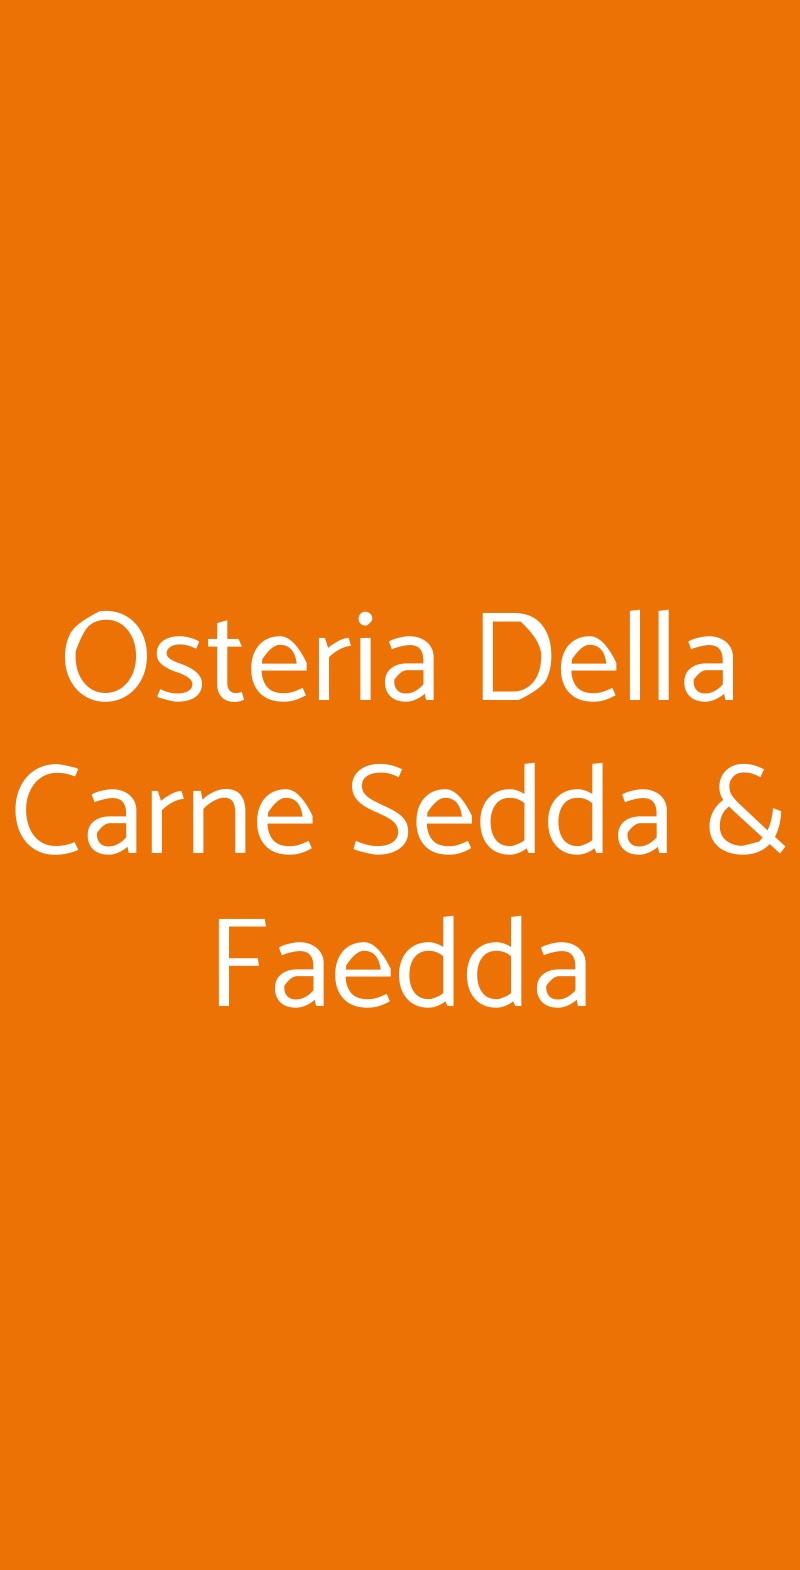 Osteria Della Carne Sedda & Faedda Milano menù 1 pagina